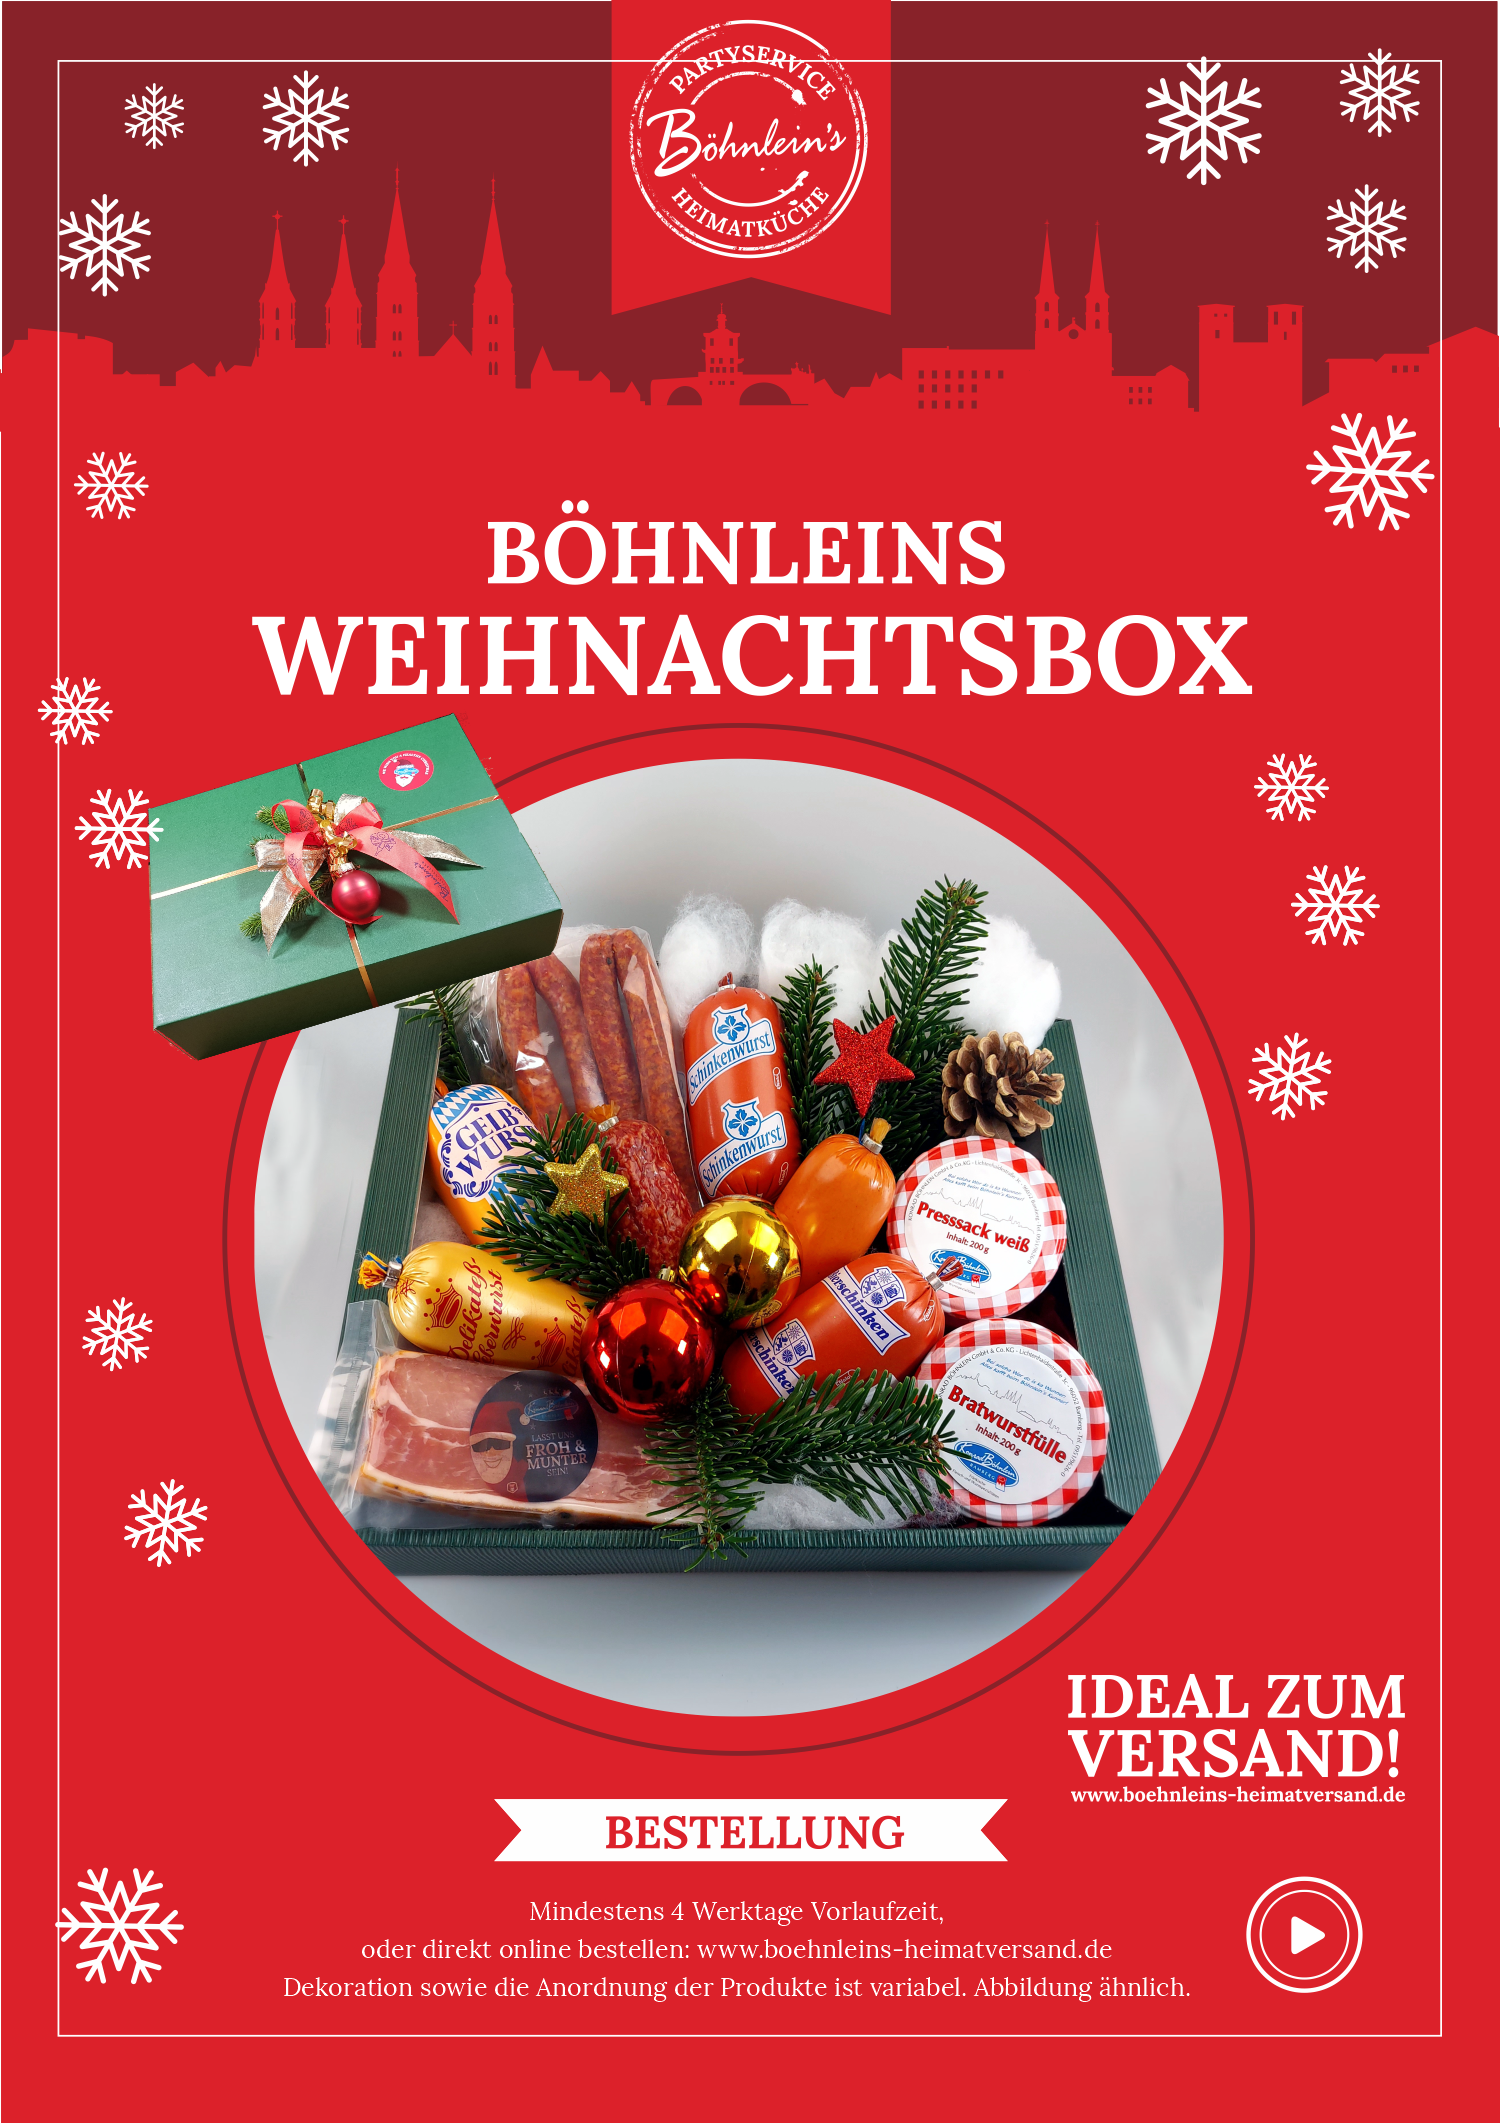 Konrad Böhnlein GmbH|Unsere Bamberger Weihnachtskörbe 2021